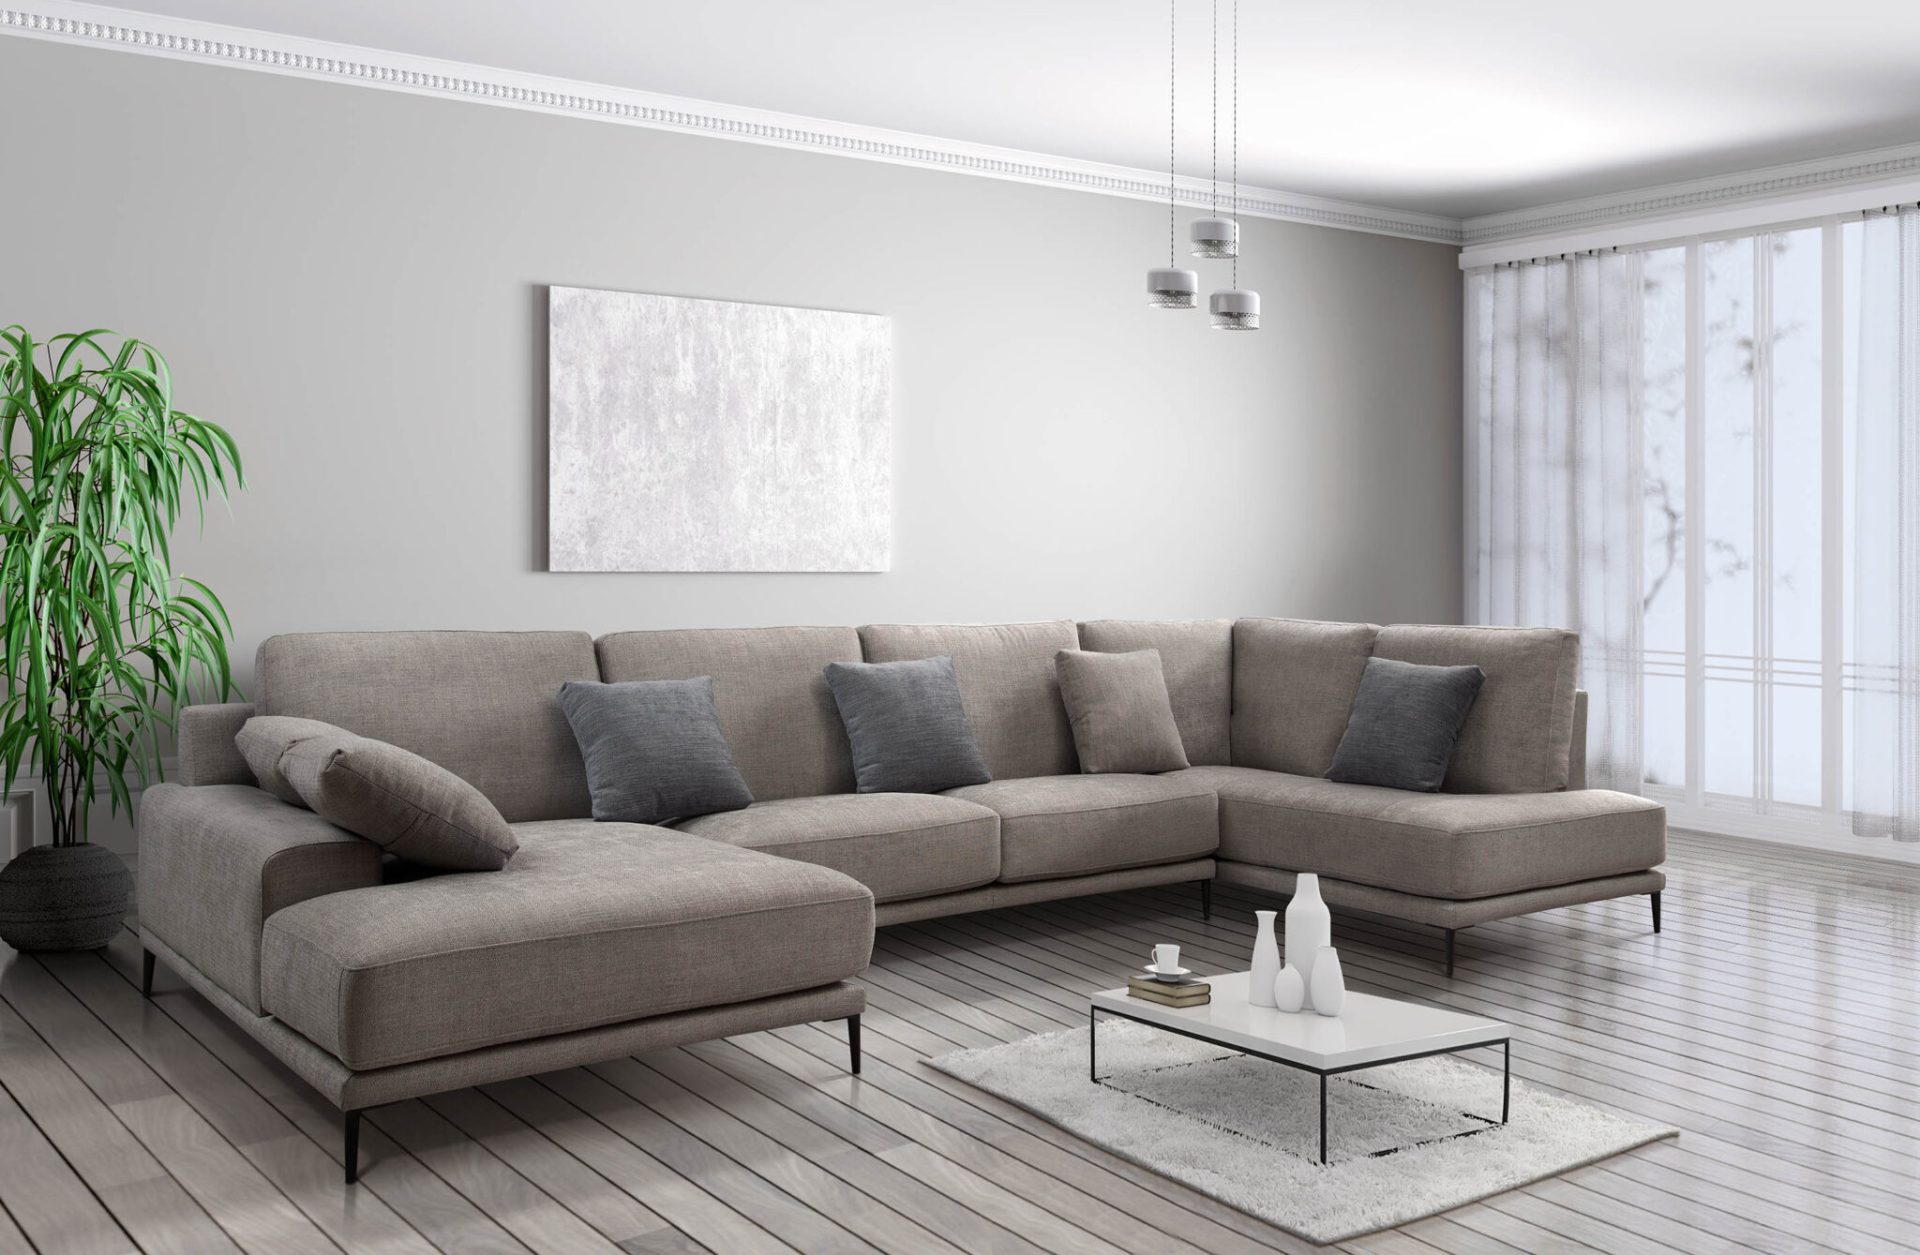 Sofá MOD1296-23. Actualiza tu sala con el encanto del sofá nórdico. Experimenta la comodidad y estilo escandinavo en tu hogar. ¡Compra ahora!